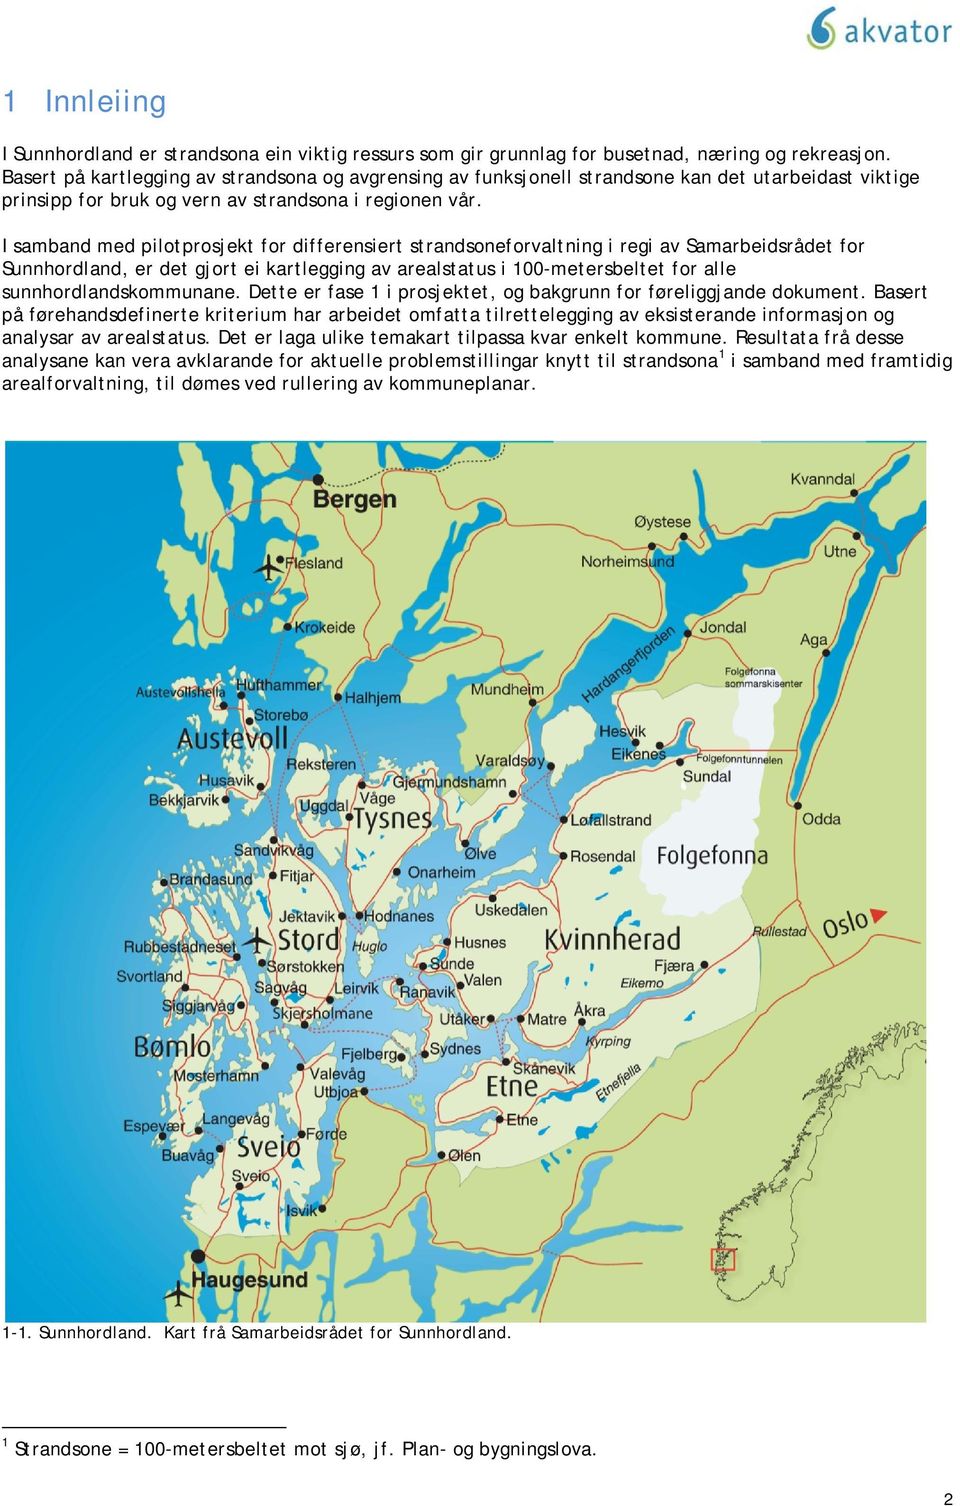 I samband med pilotprosjekt for differensiert strandsoneforvaltning i regi av Samarbeidsrådet for Sunnhordland, er det gjort ei kartlegging av arealstatus i 100-metersbeltet for alle